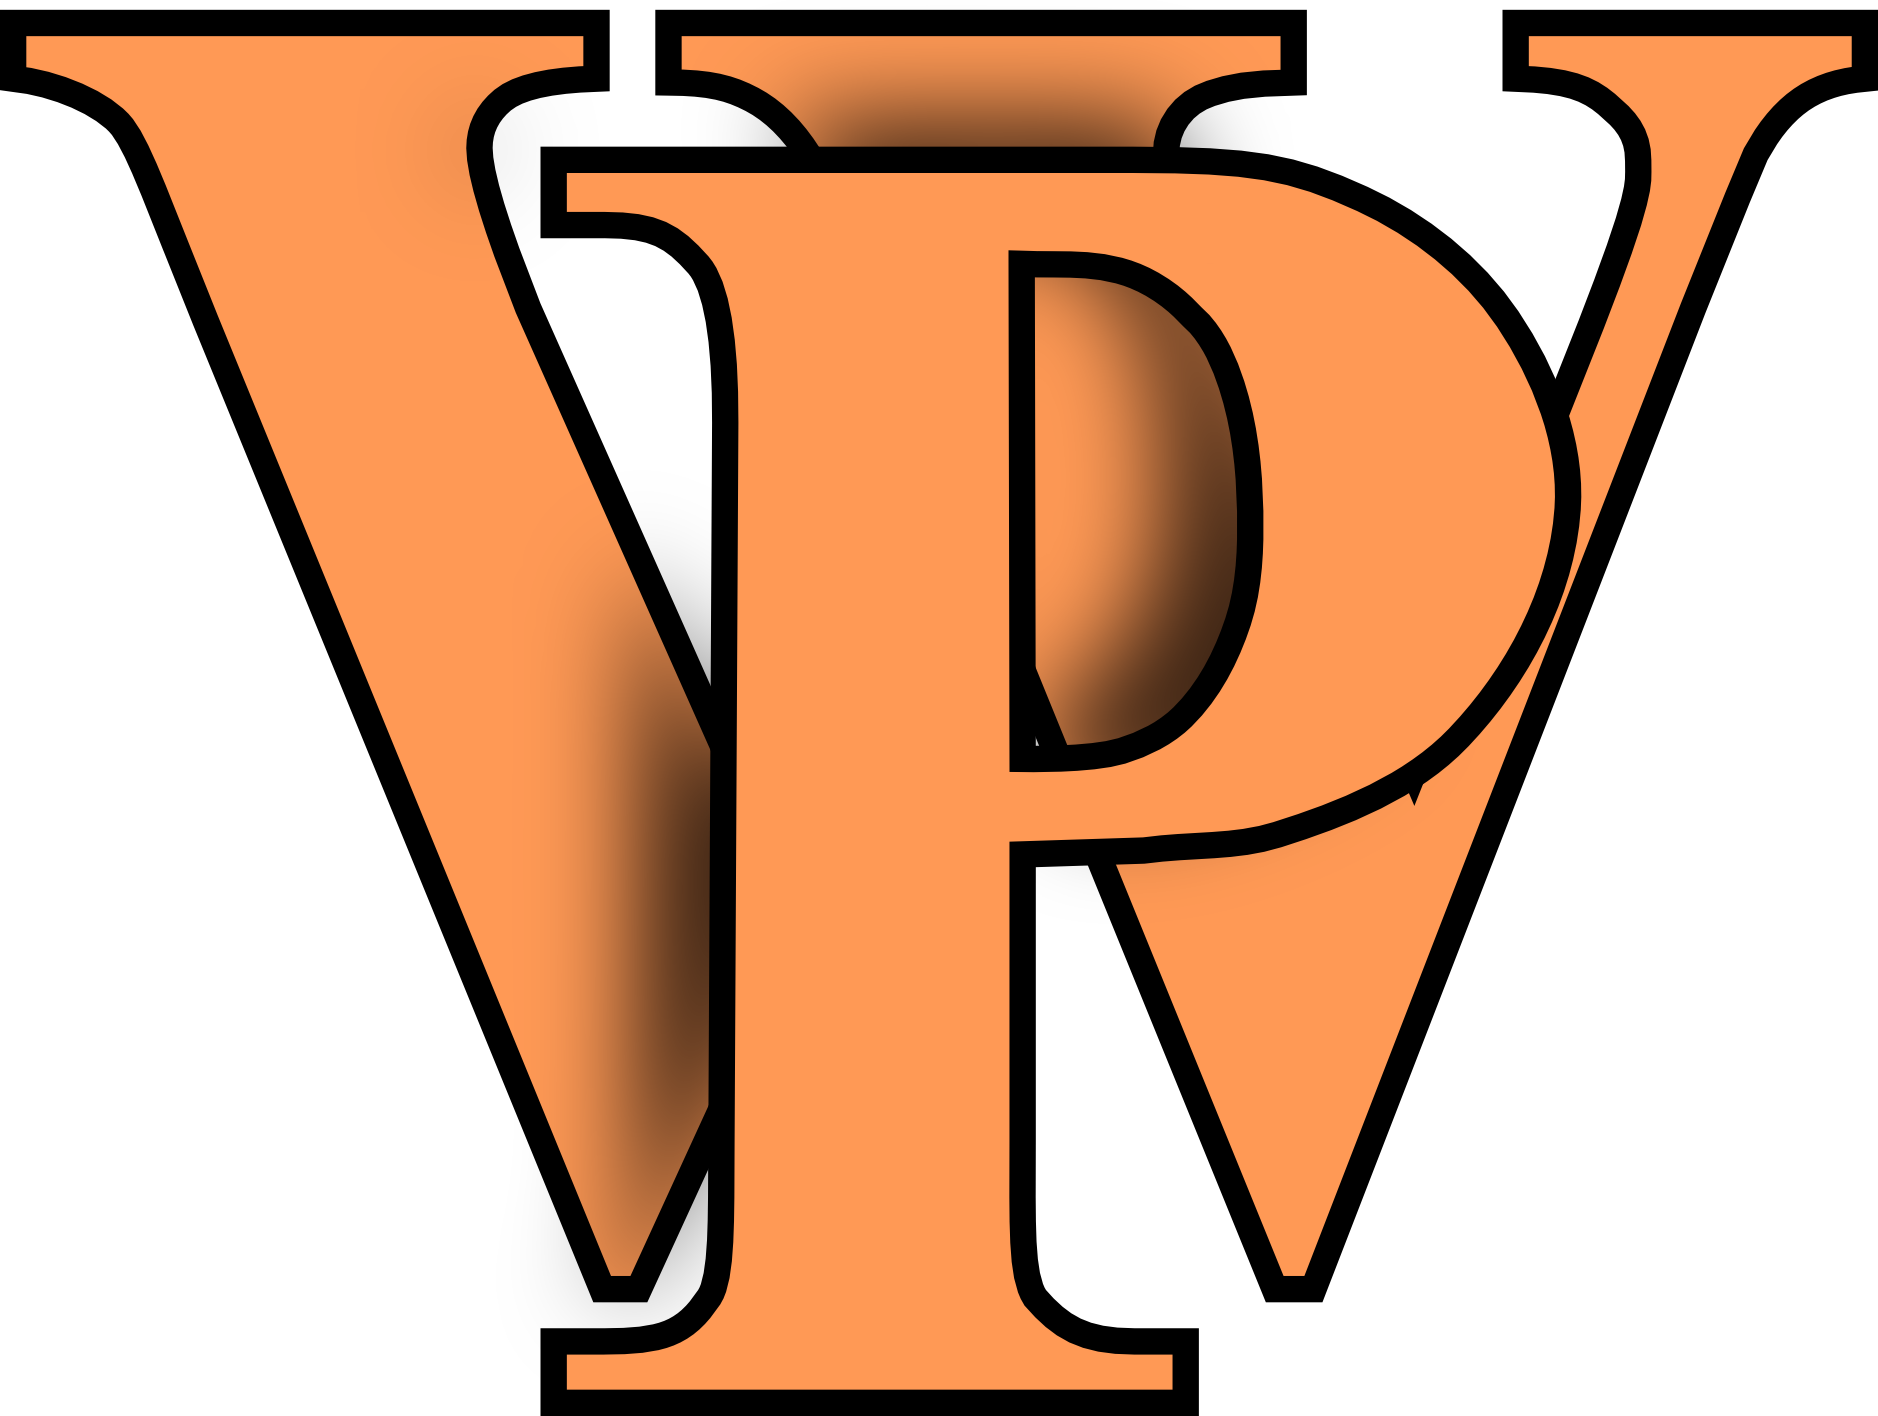 wp logo